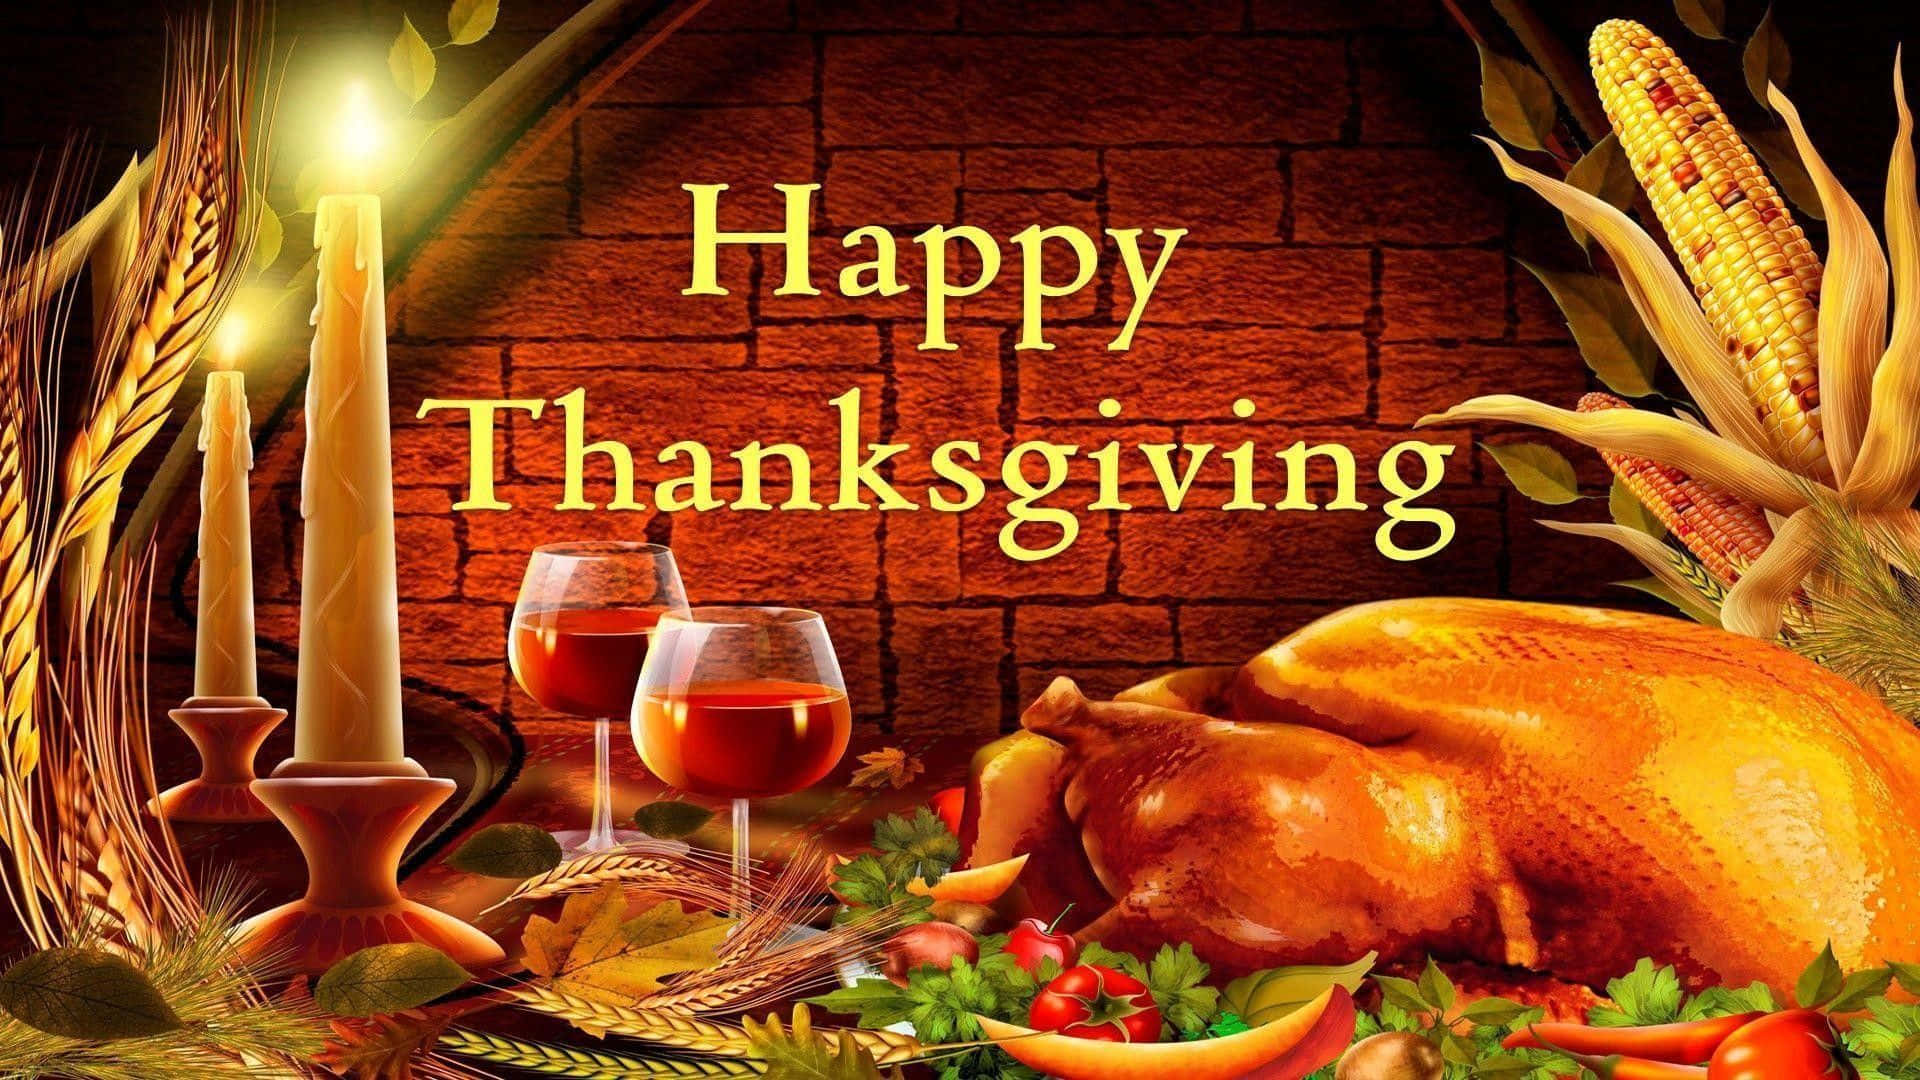 Ichwünsche Dir Ein Frohes Thanksgiving! Wallpaper